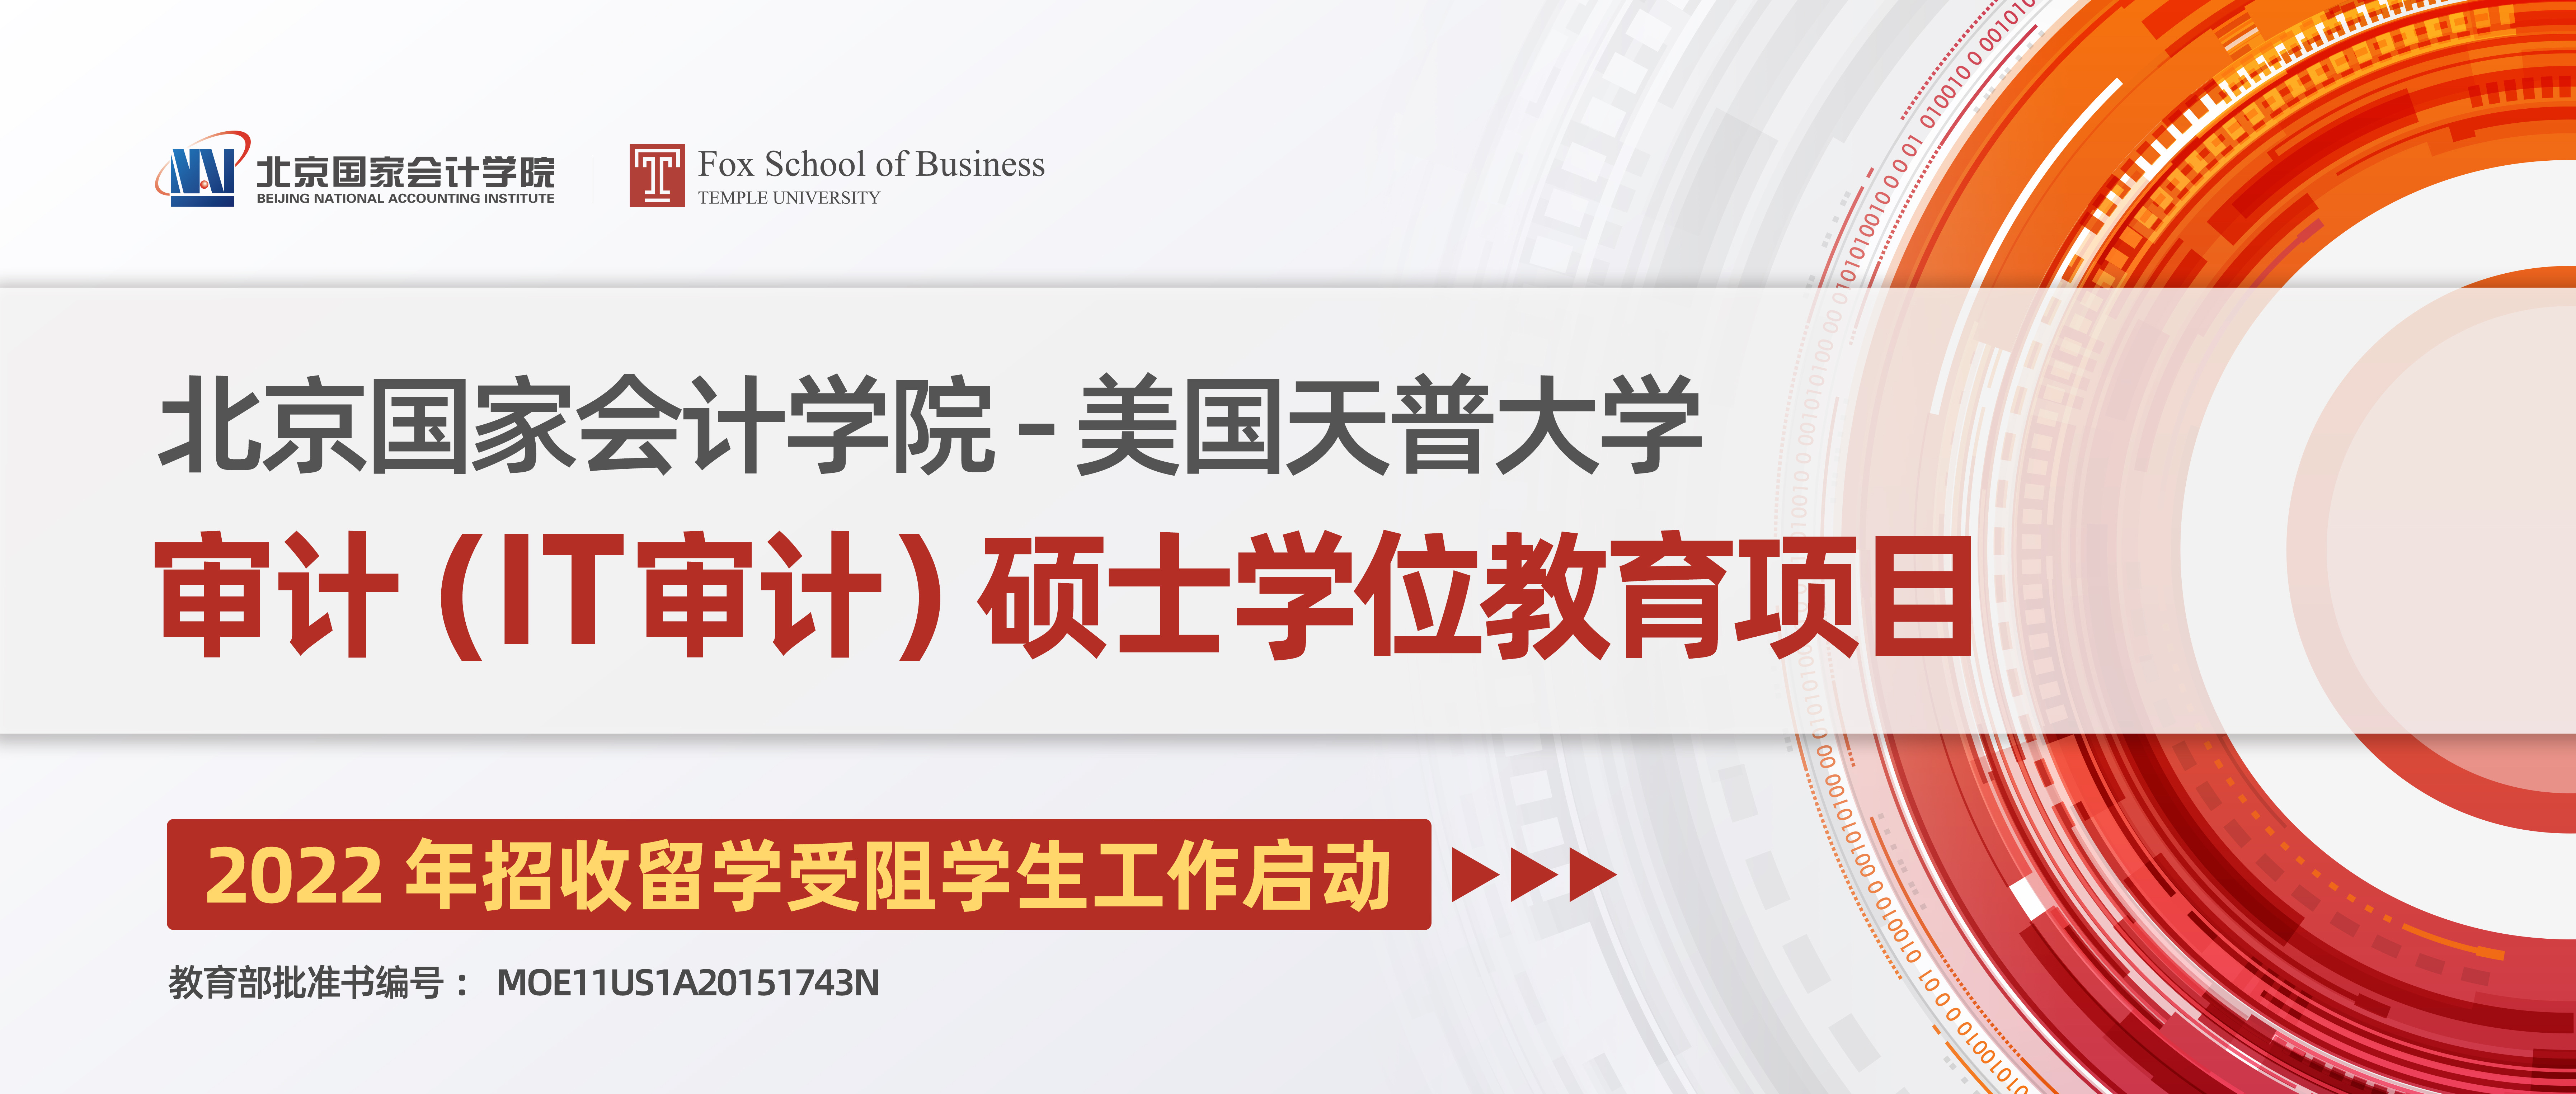 北京国家会计学院与美国天普大学合作举办审计（IT审计）硕士学位教育项目招生简章 (第六期班自主招生名额)